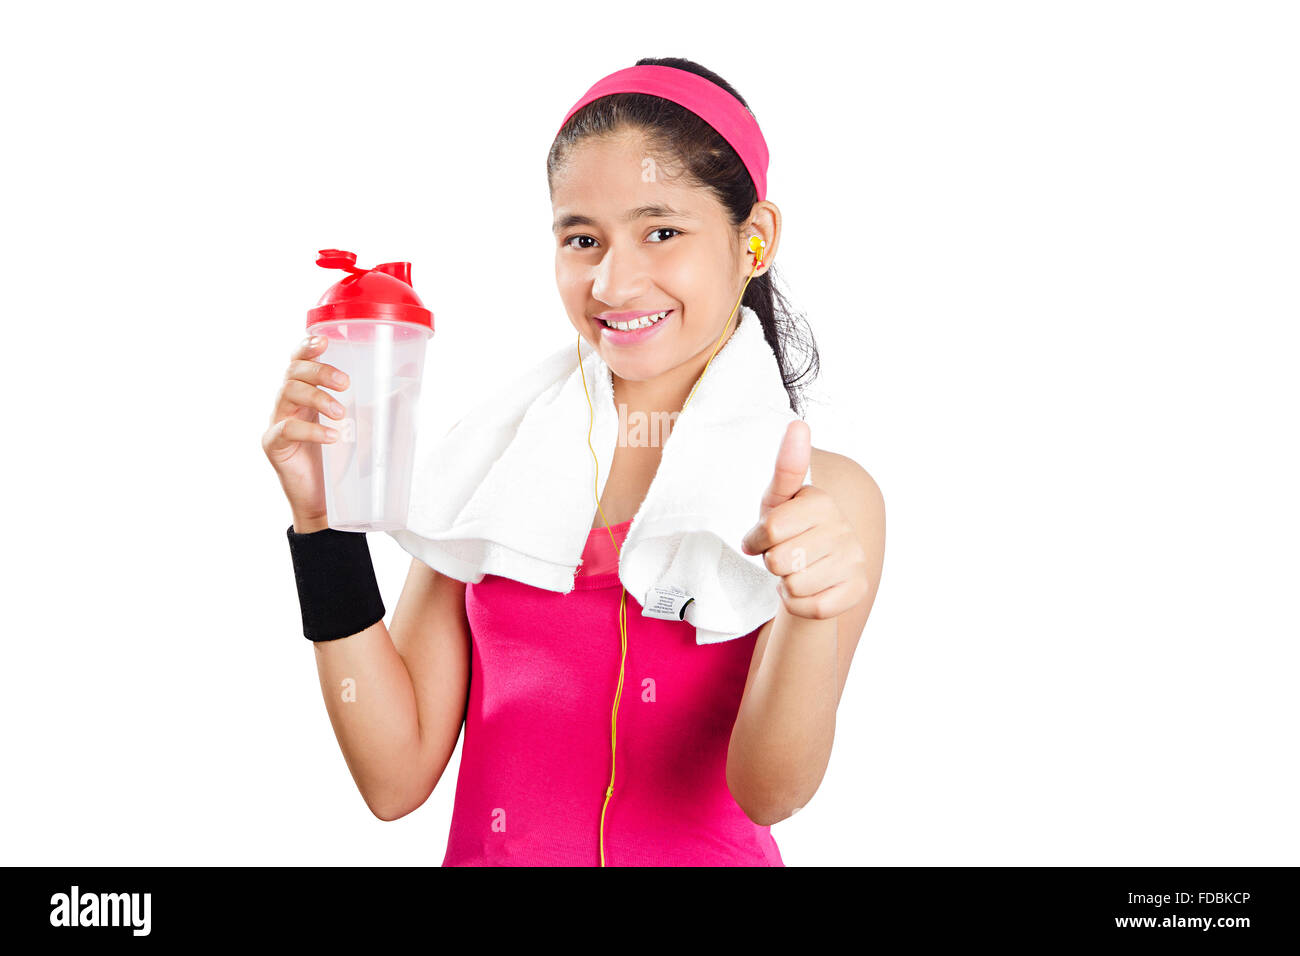 1 junge Teenager Girl Work-out steht Trinkwasser und Daumen nach oben zeigt Stockfoto